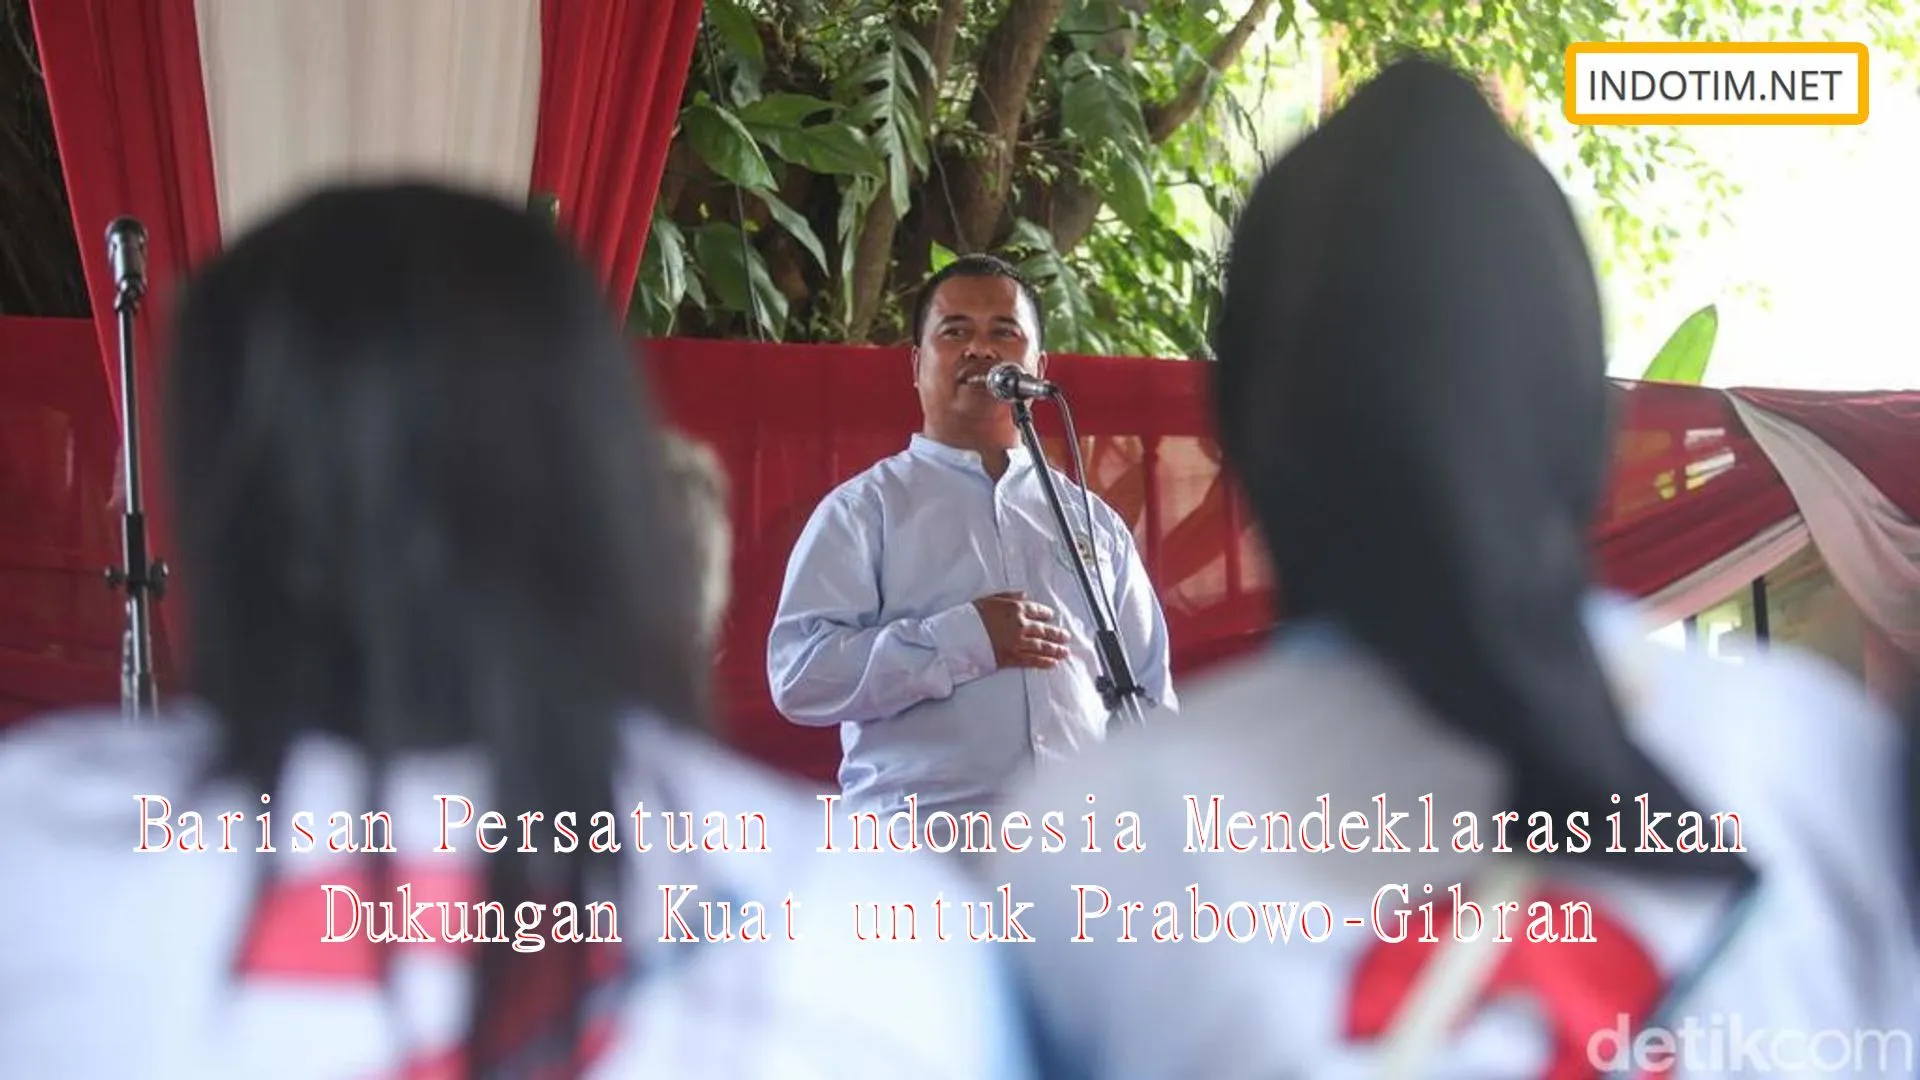 Barisan Persatuan Indonesia Mendeklarasikan Dukungan Kuat untuk Prabowo-Gibran